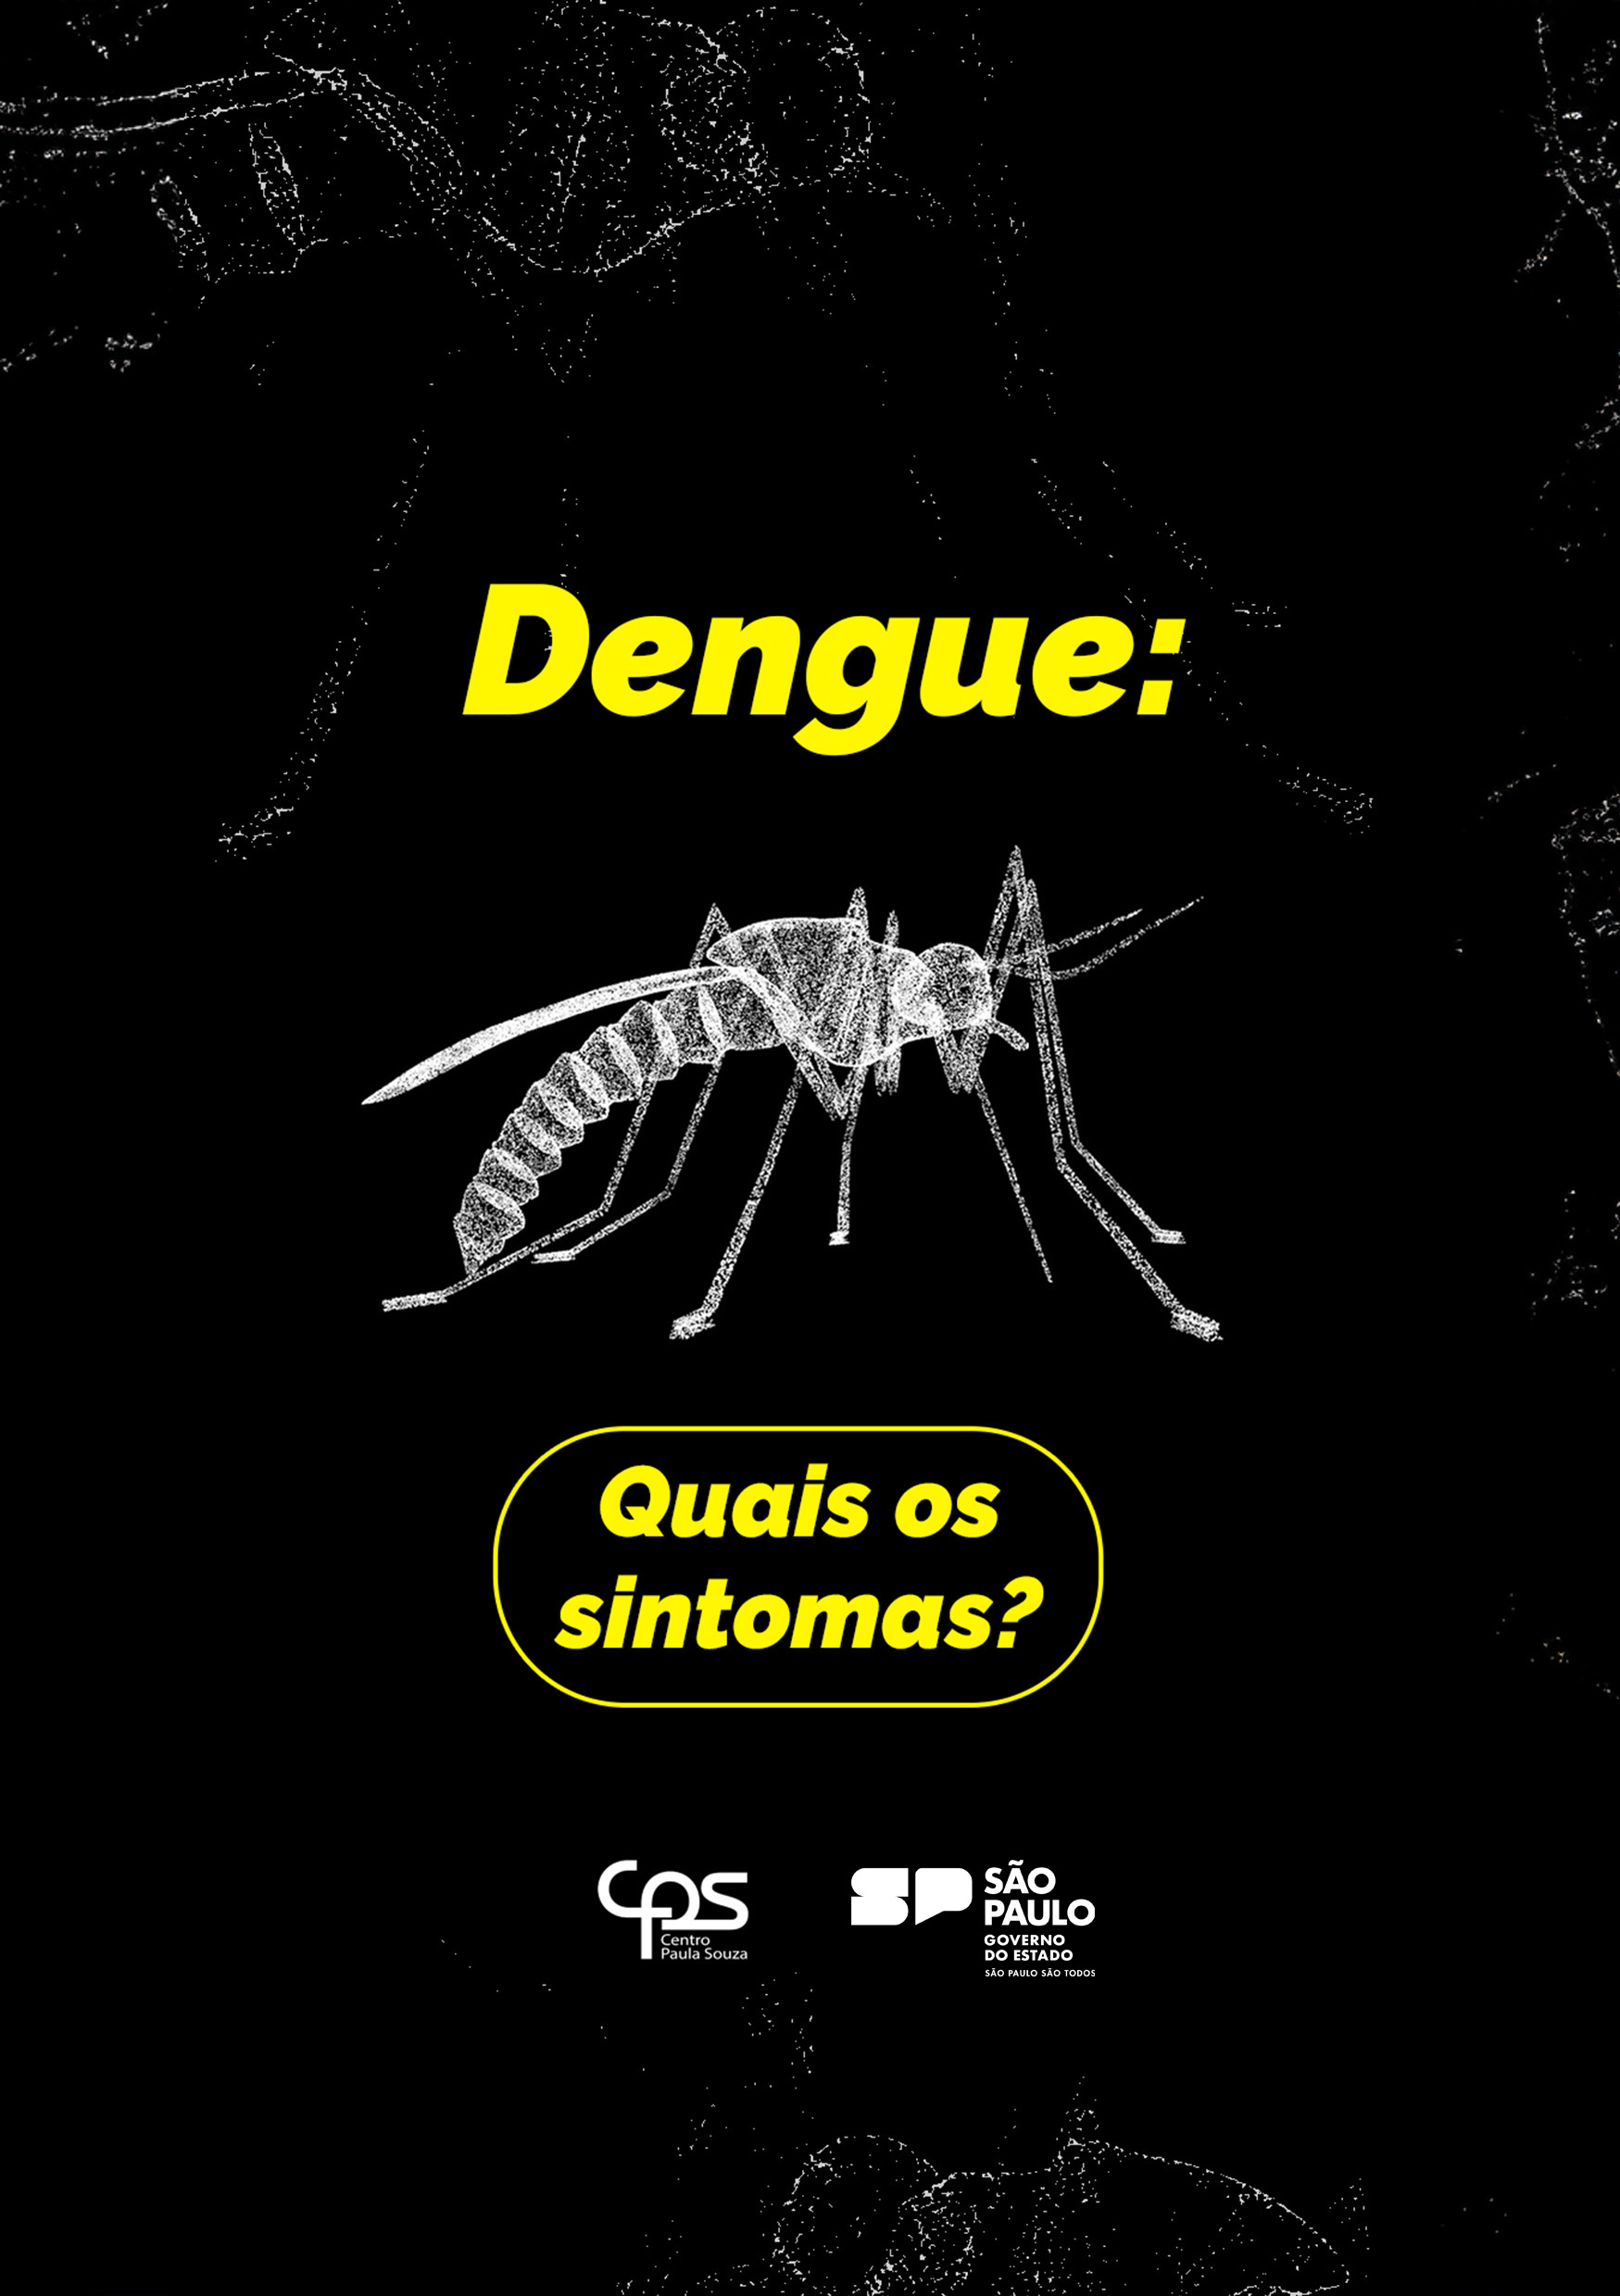 CPS_Combate-a-Dengue_Thumb_edit